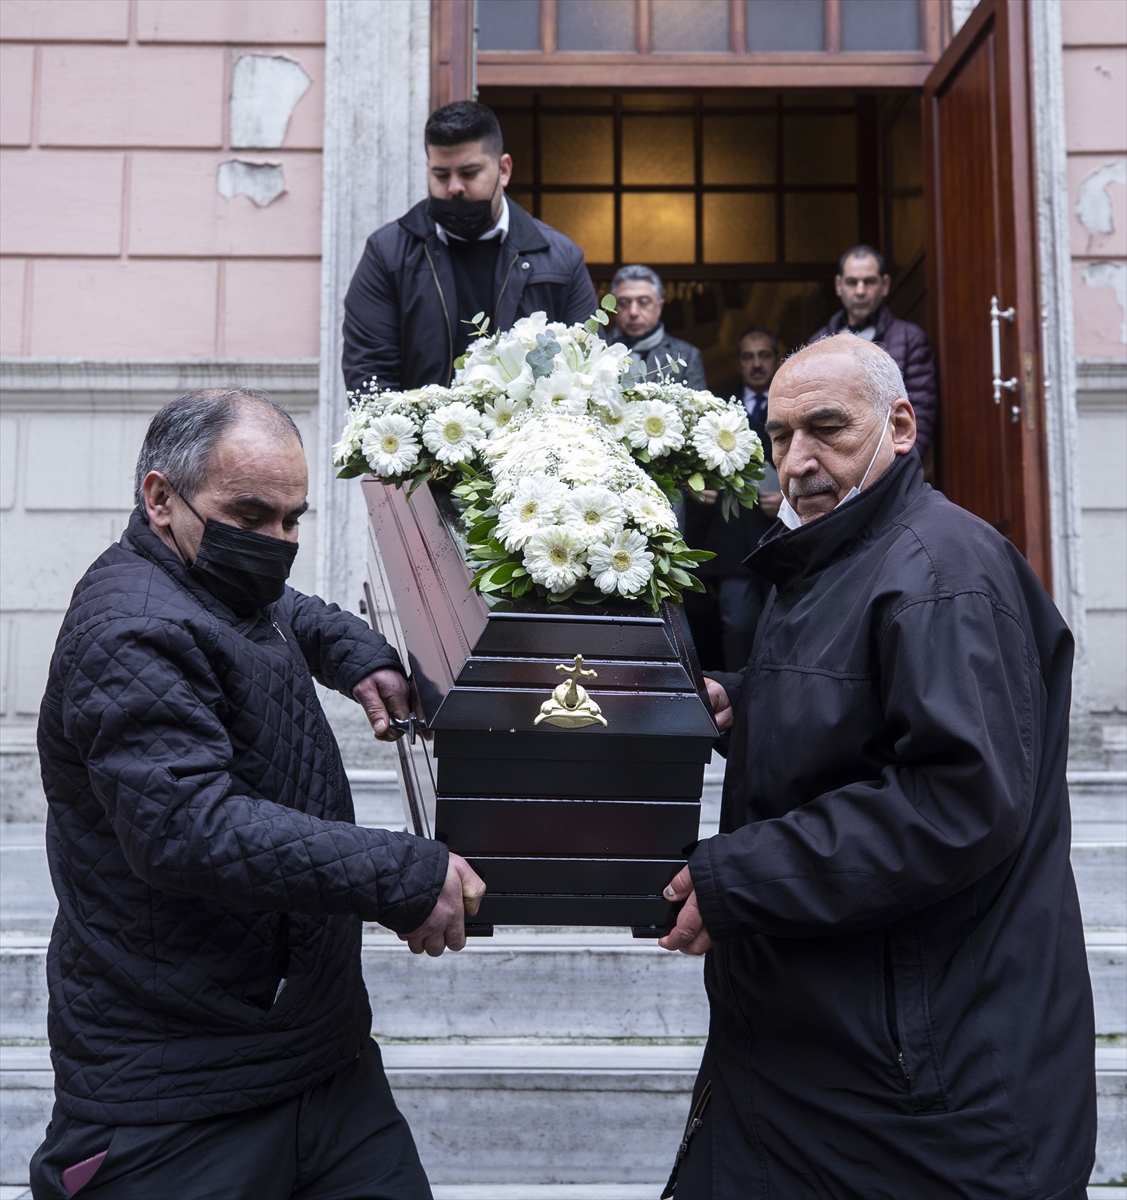 İstanbul'da kilise lojmanındaki yangında ölenlerden Ekmekçioğlu için cenaze töreni